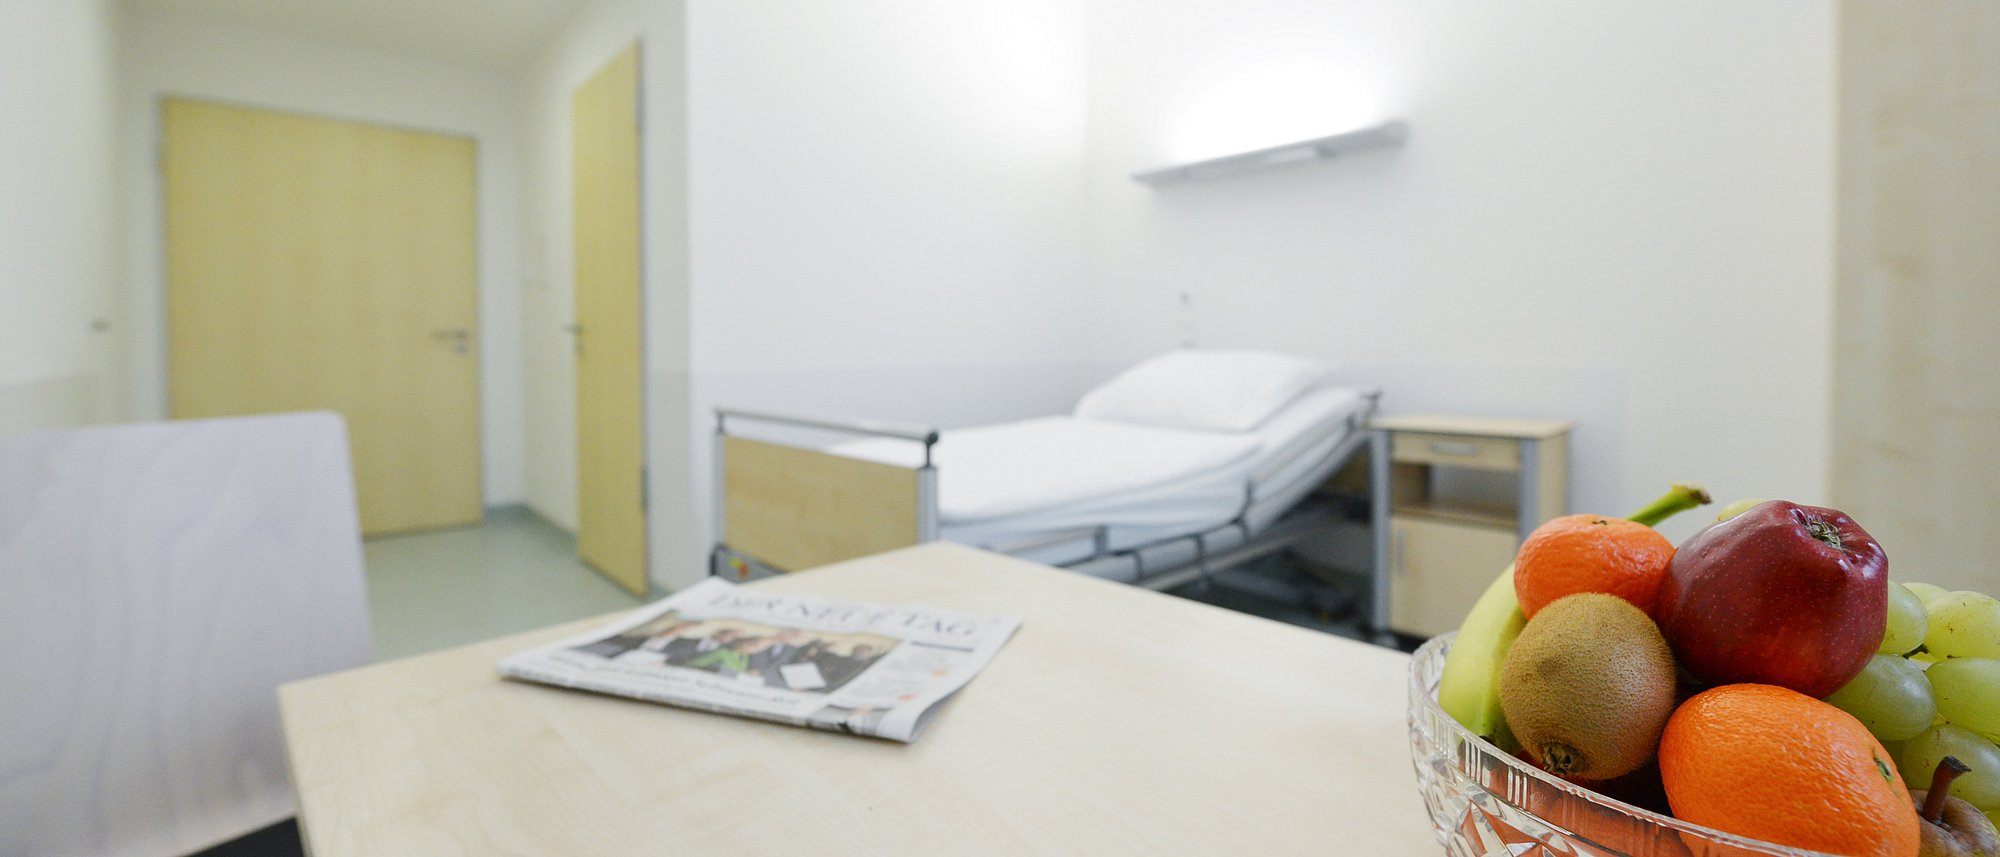 Patientenzimmer HAUS 14 Wöllershof (Frank Hübler/medbo)